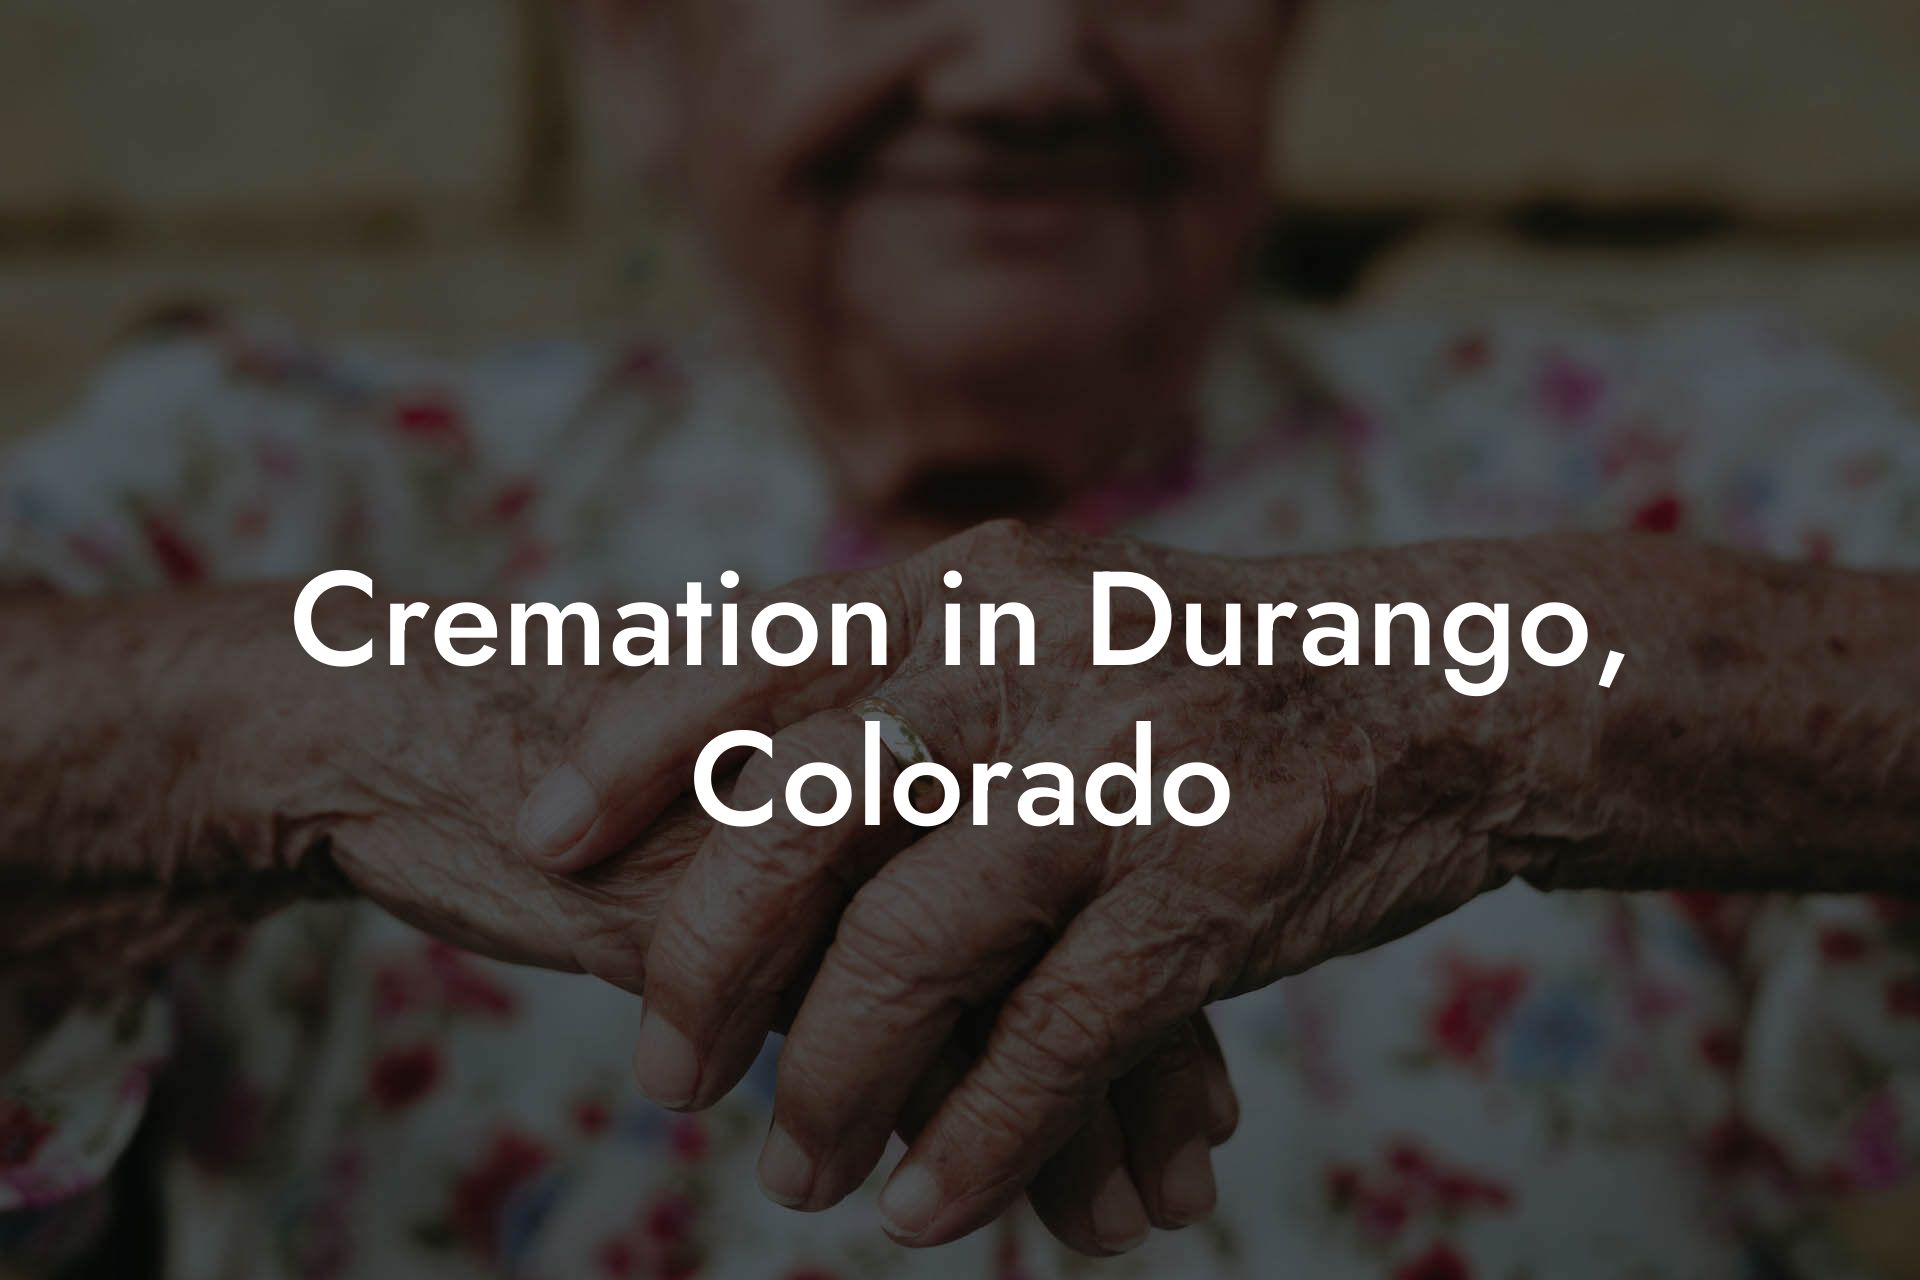 Cremation in Durango, Colorado